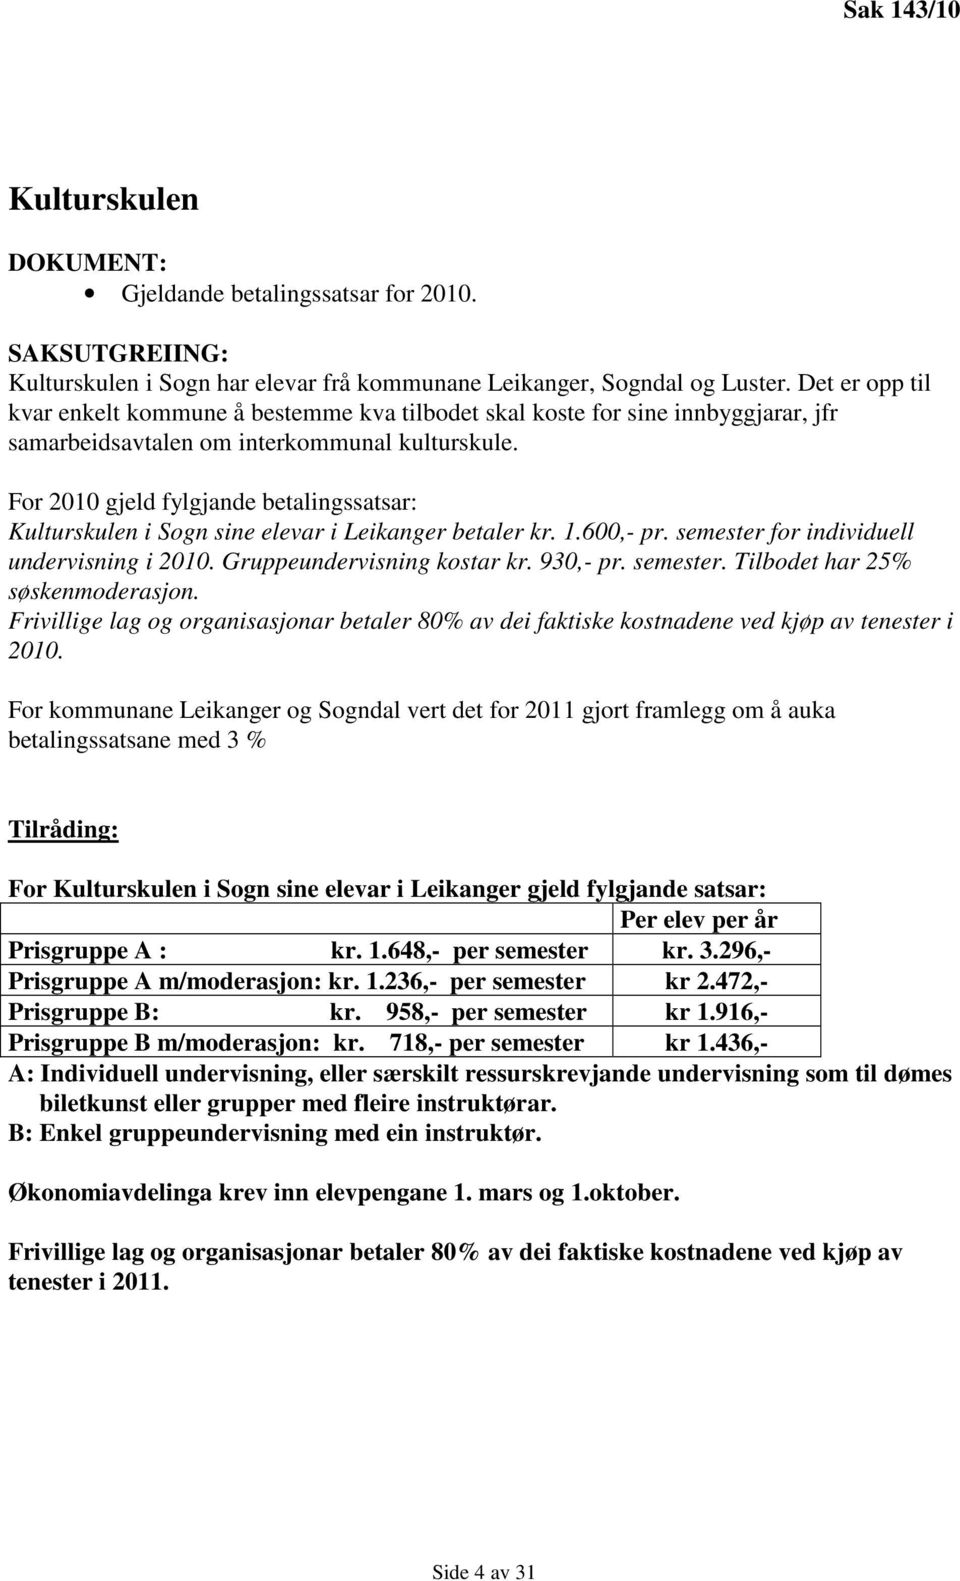 For 2010 gjeld fylgjande betalingssatsar: Kulturskulen i Sogn sine elevar i Leikanger betaler kr. 1.600,- pr. semester for individuell undervisning i 2010. Gruppeundervisning kostar kr. 930,- pr.